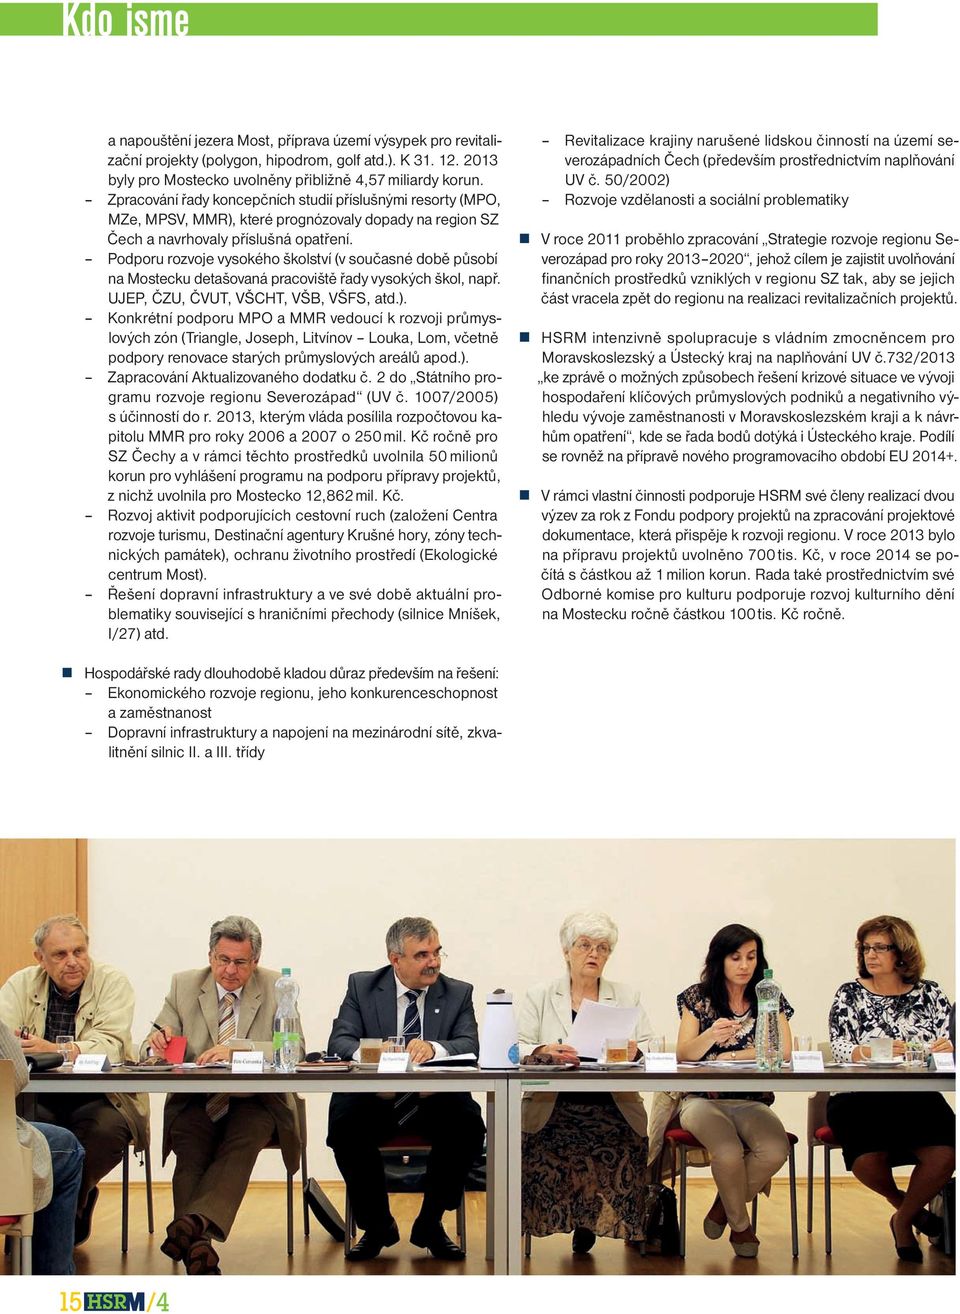 Podporu rozvoje vysokého školství (v současné době působí na Mostecku detašovaná pracoviště řady vysokých škol, např. UJEP, ČZU, ČVUT, VŠCHT, VŠB, VŠFS, atd.).